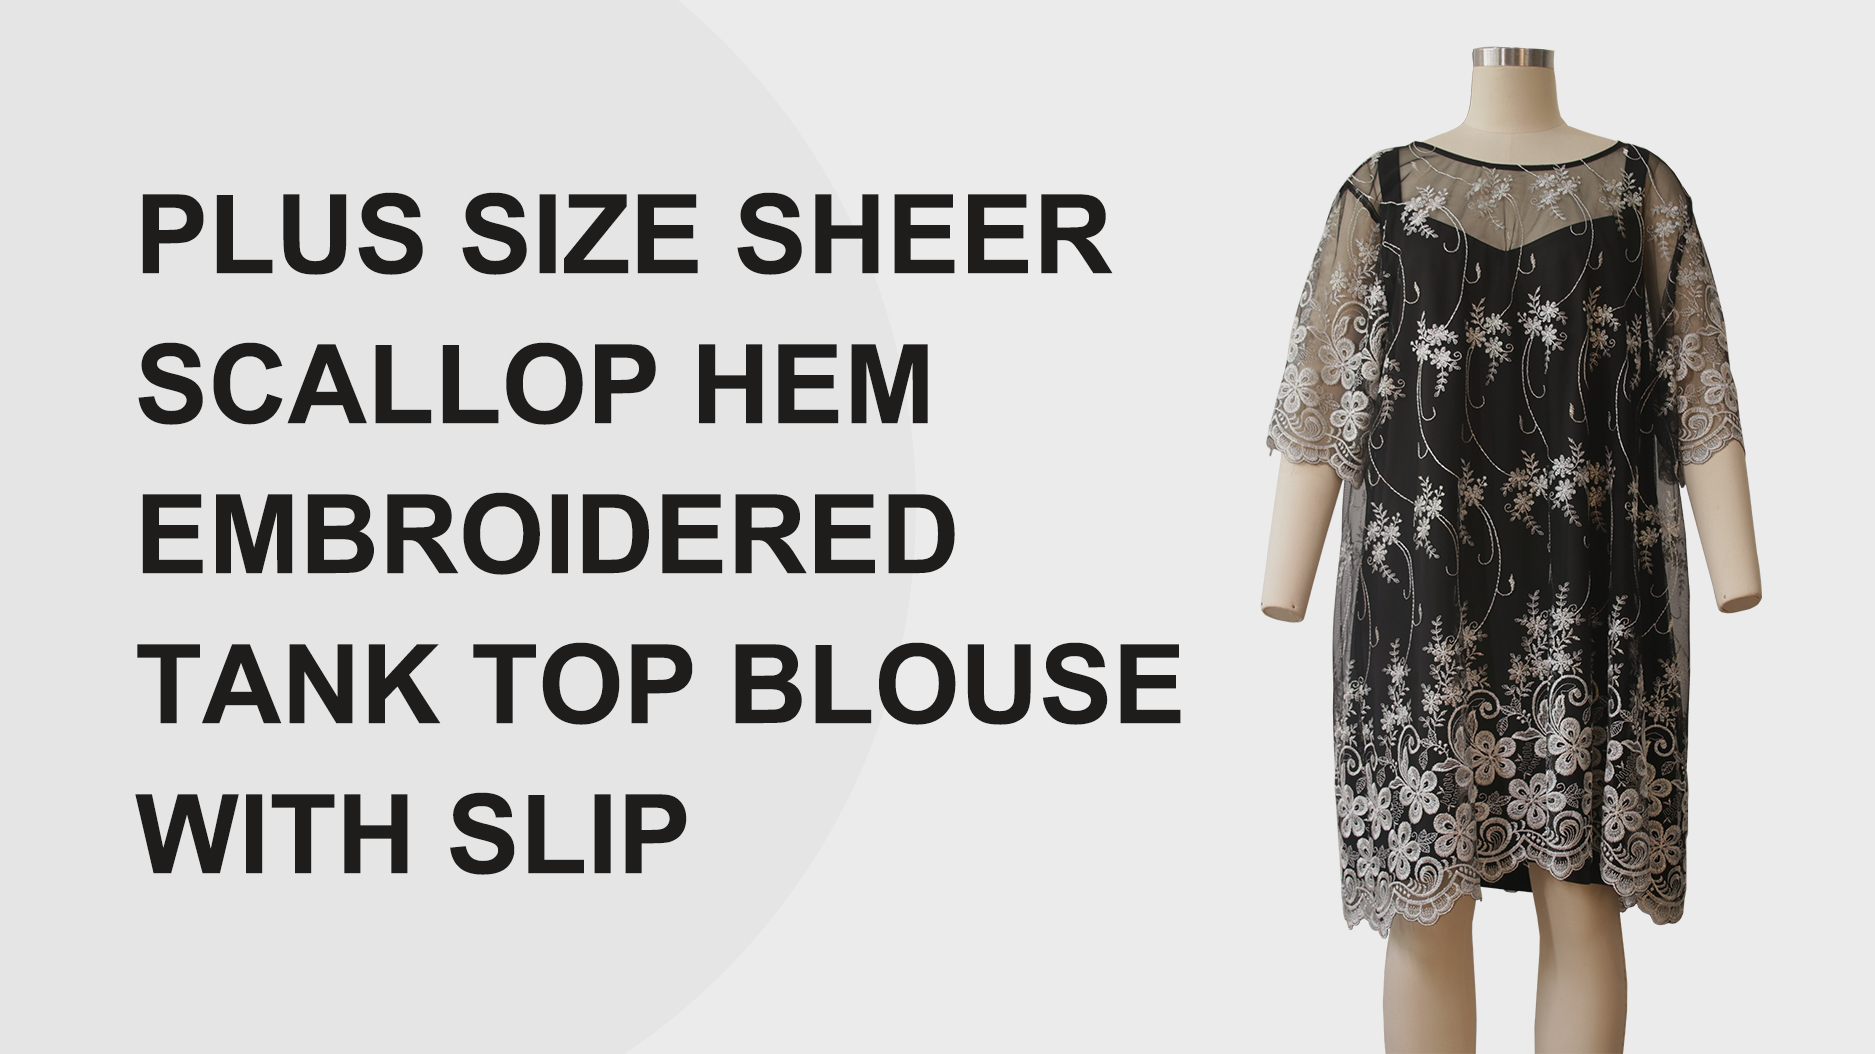 Plus-Size-Bluse, transparenter, gewellter Saum, bestickte Tank-Top-Bluse mit Slip-Produkten |Auschalink